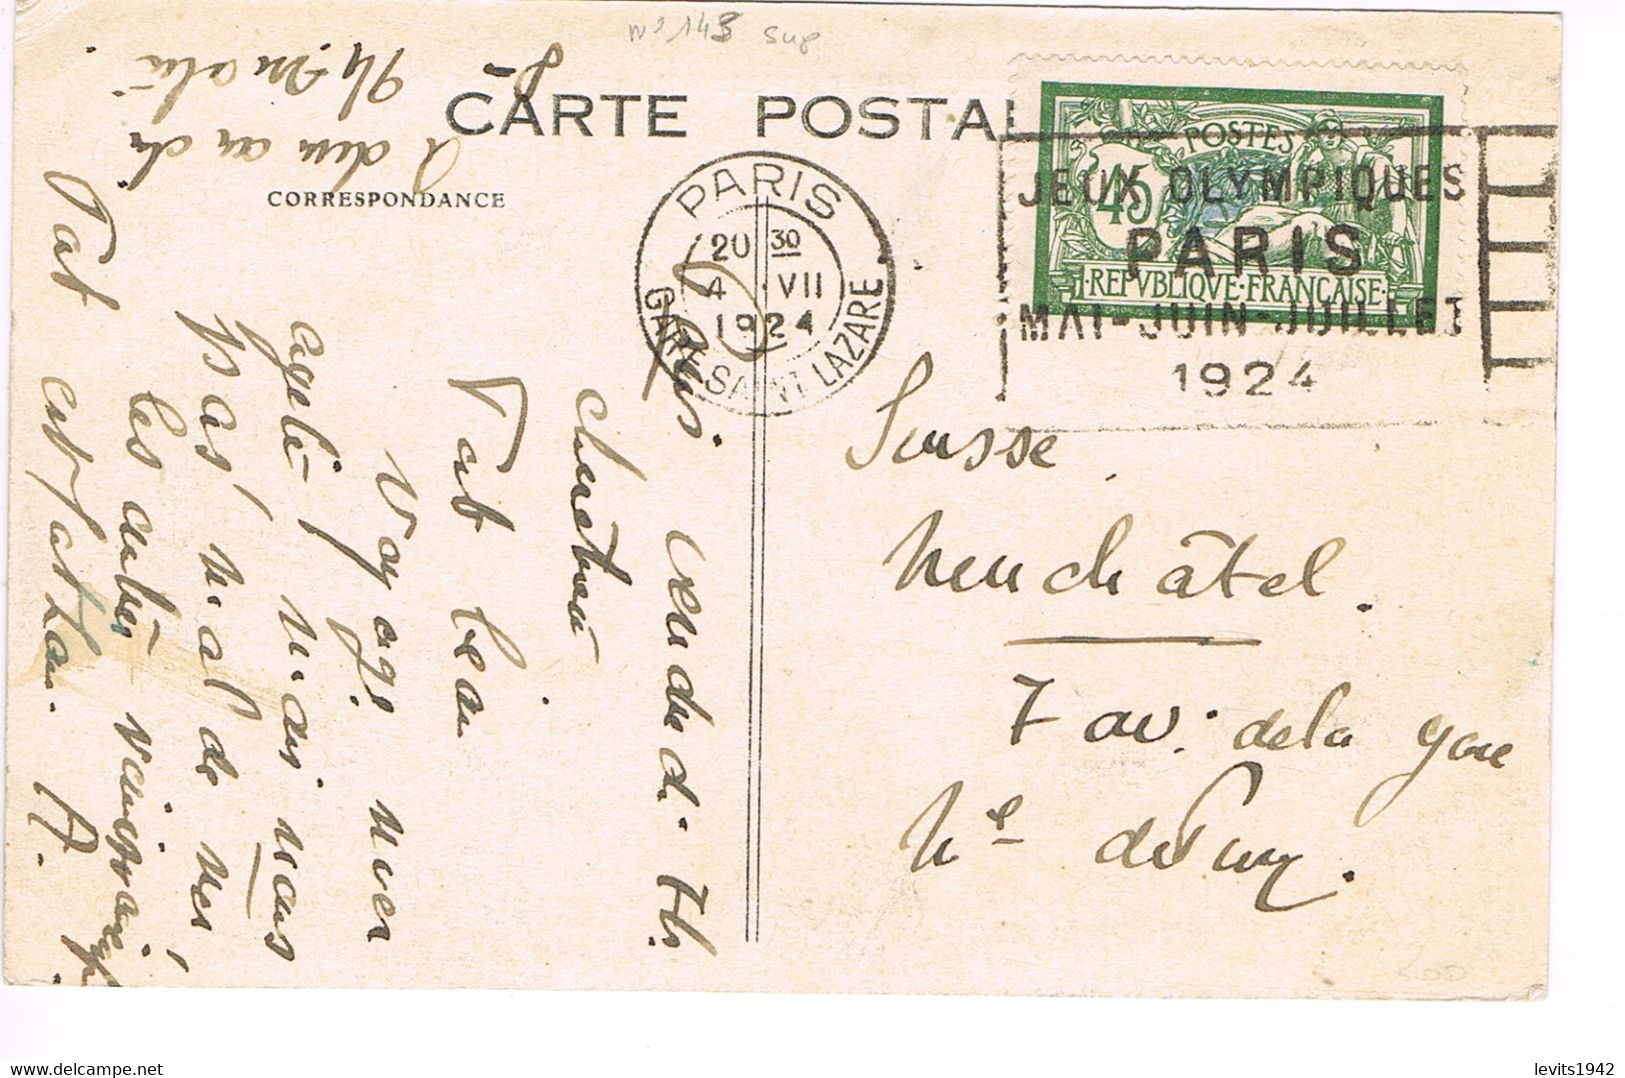 JEUX OLYMPIQUES 1924 -  MARQUE POSTALE - ESCRIME - POLO - JOUR DE COMPETITION - 04-07 - - Sommer 1924: Paris